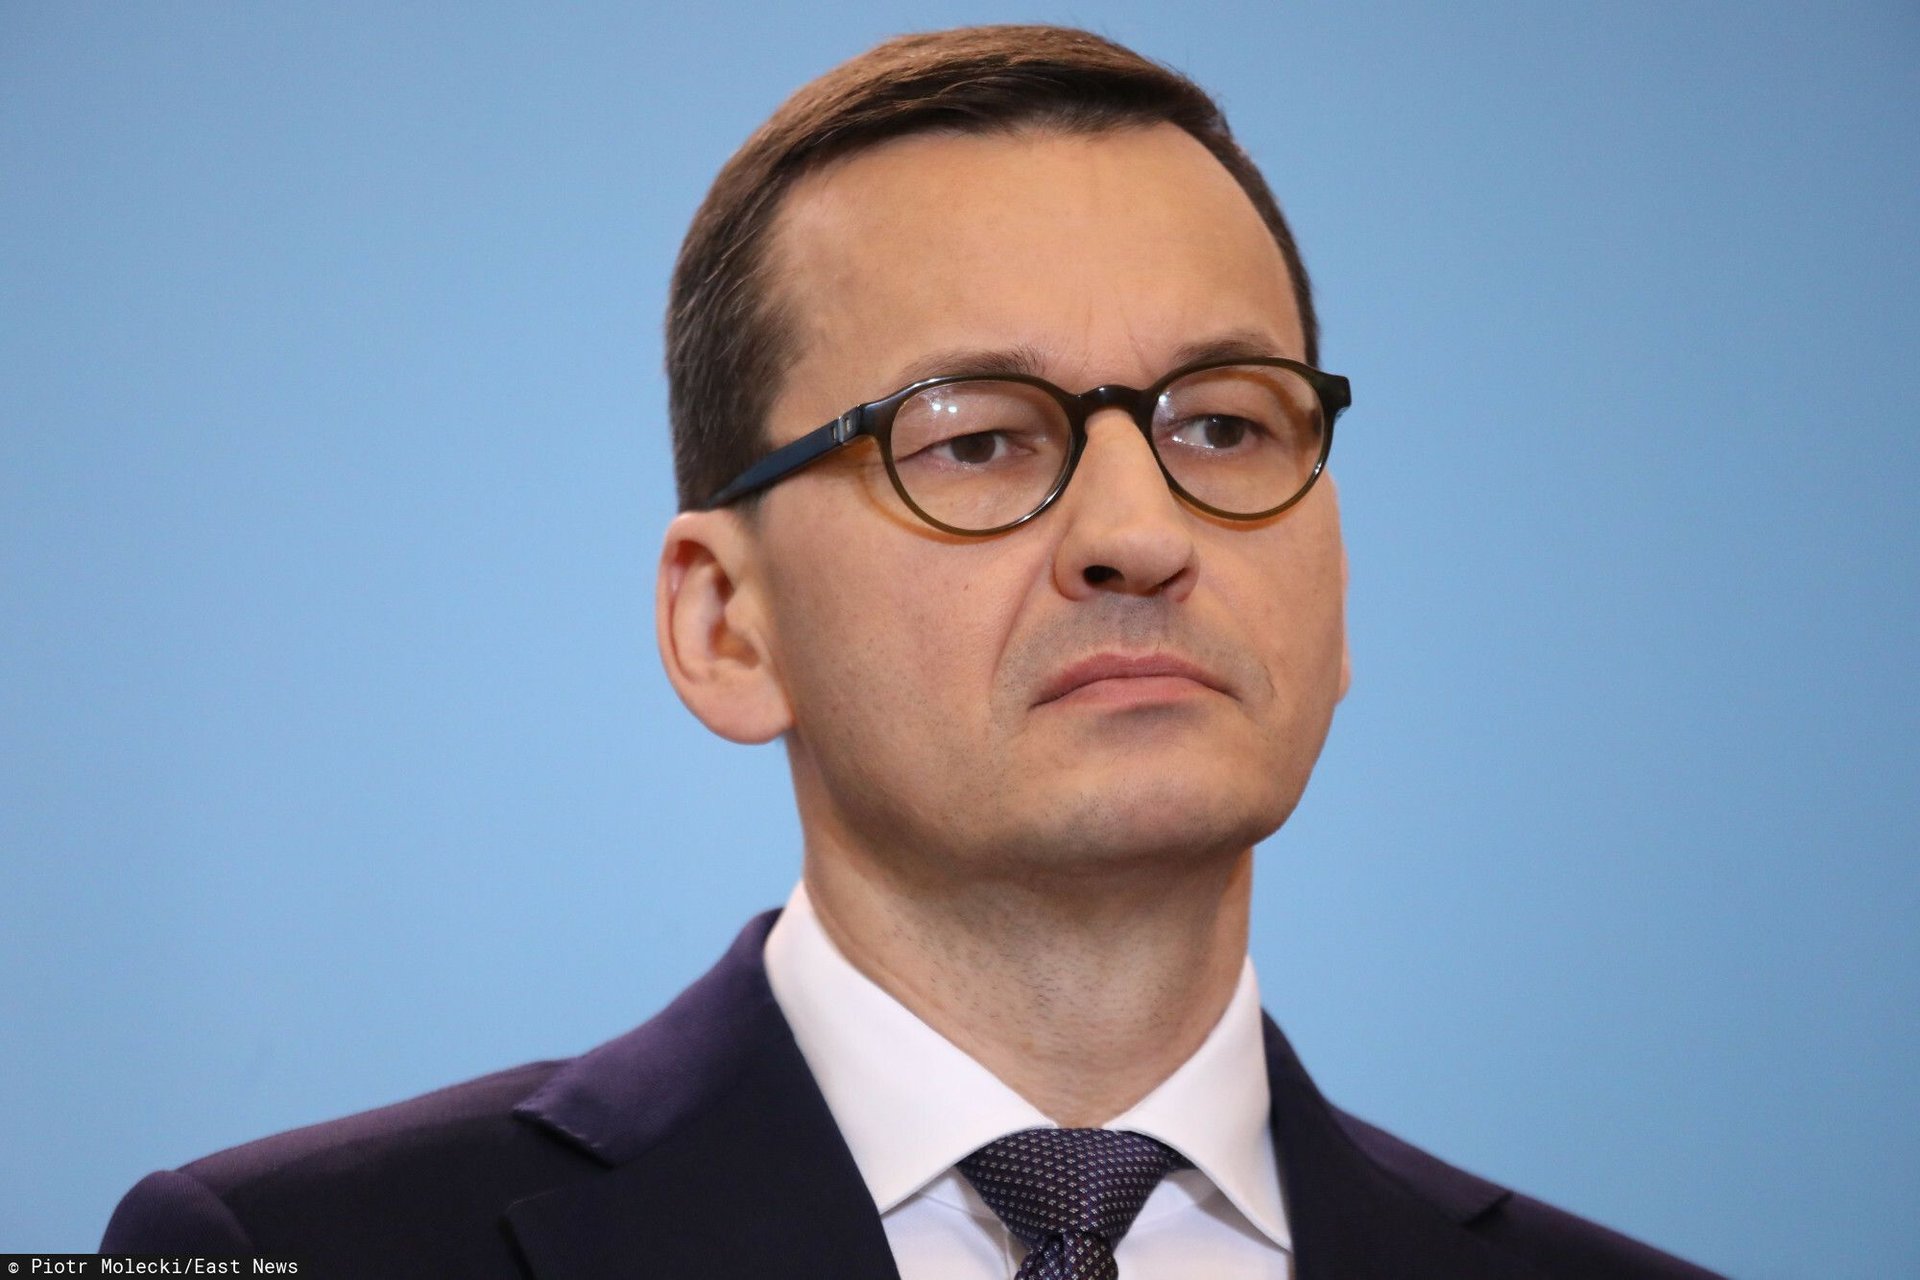 Piotr Nowak miałby zastąpić Mateusza Morawieckiego w roli premiera polskiego rządu